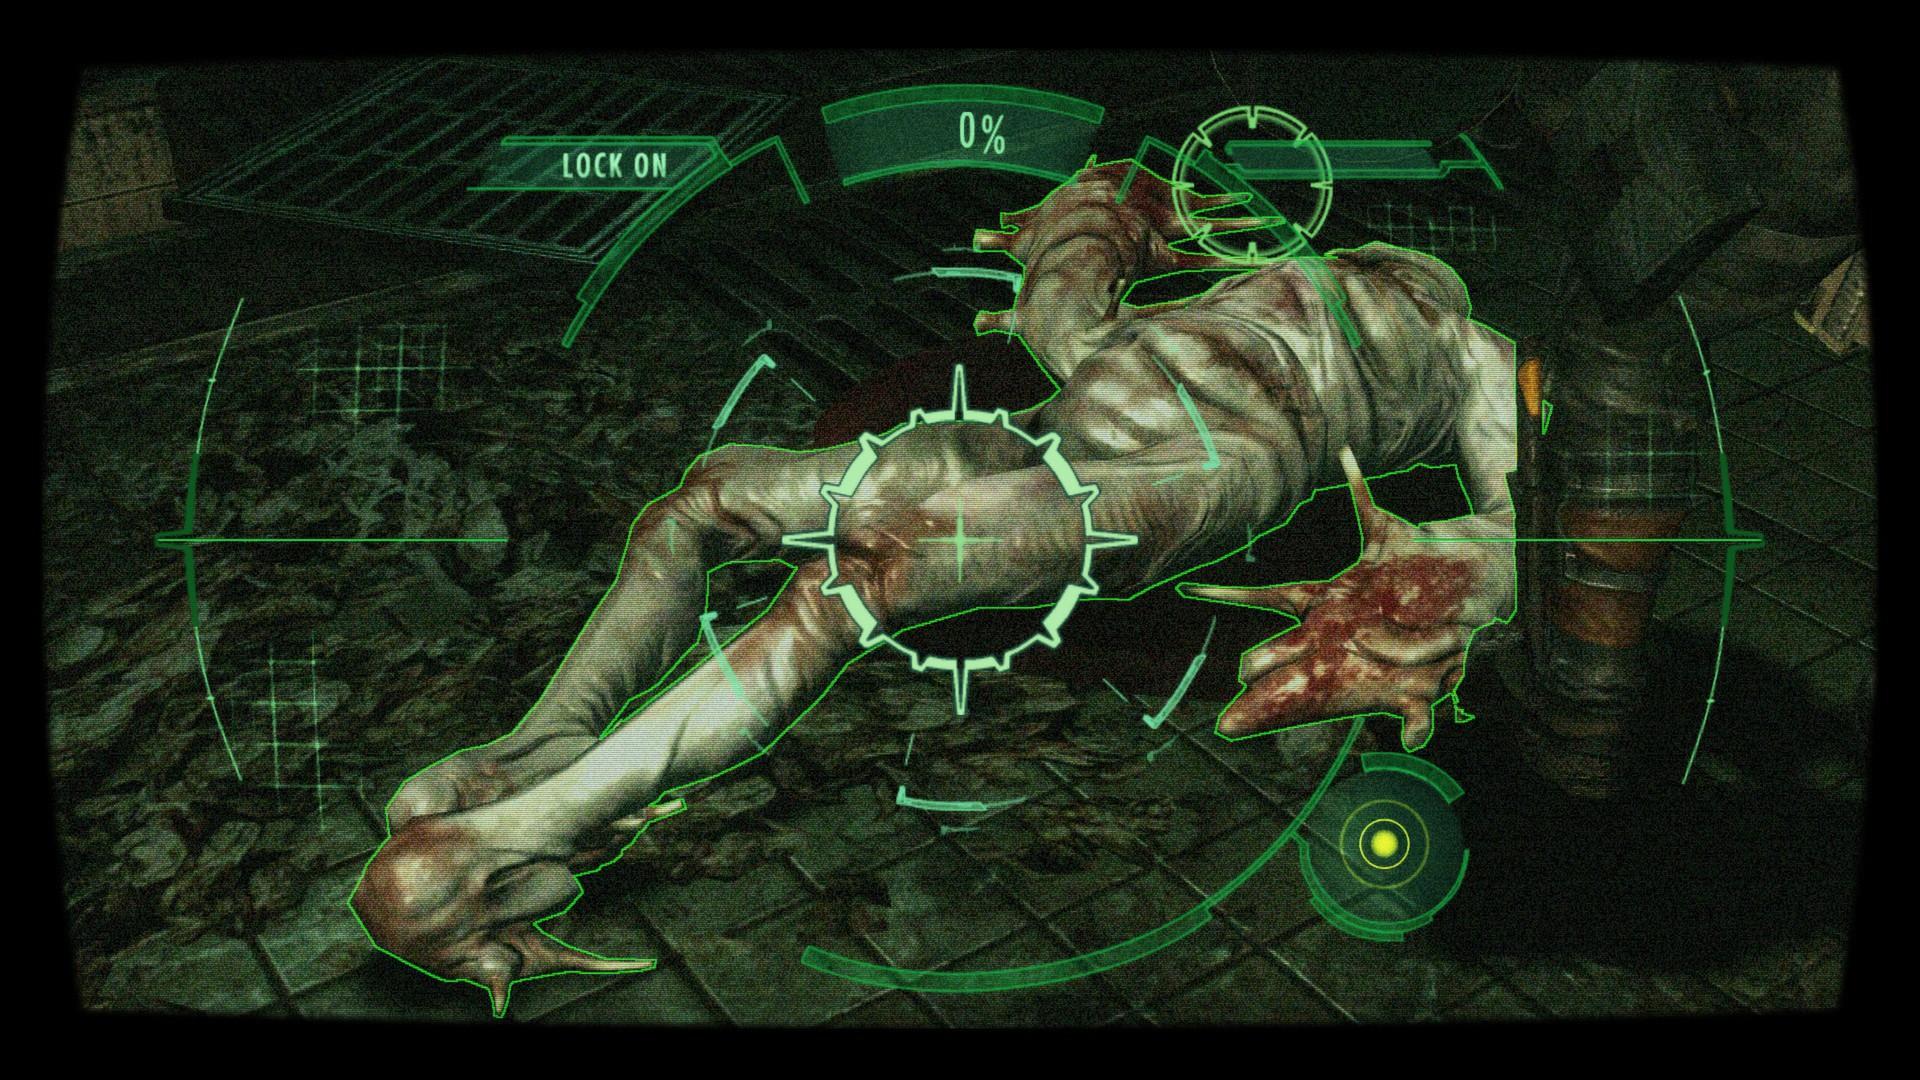 Screenshot №4 from game Resident Evil Revelations